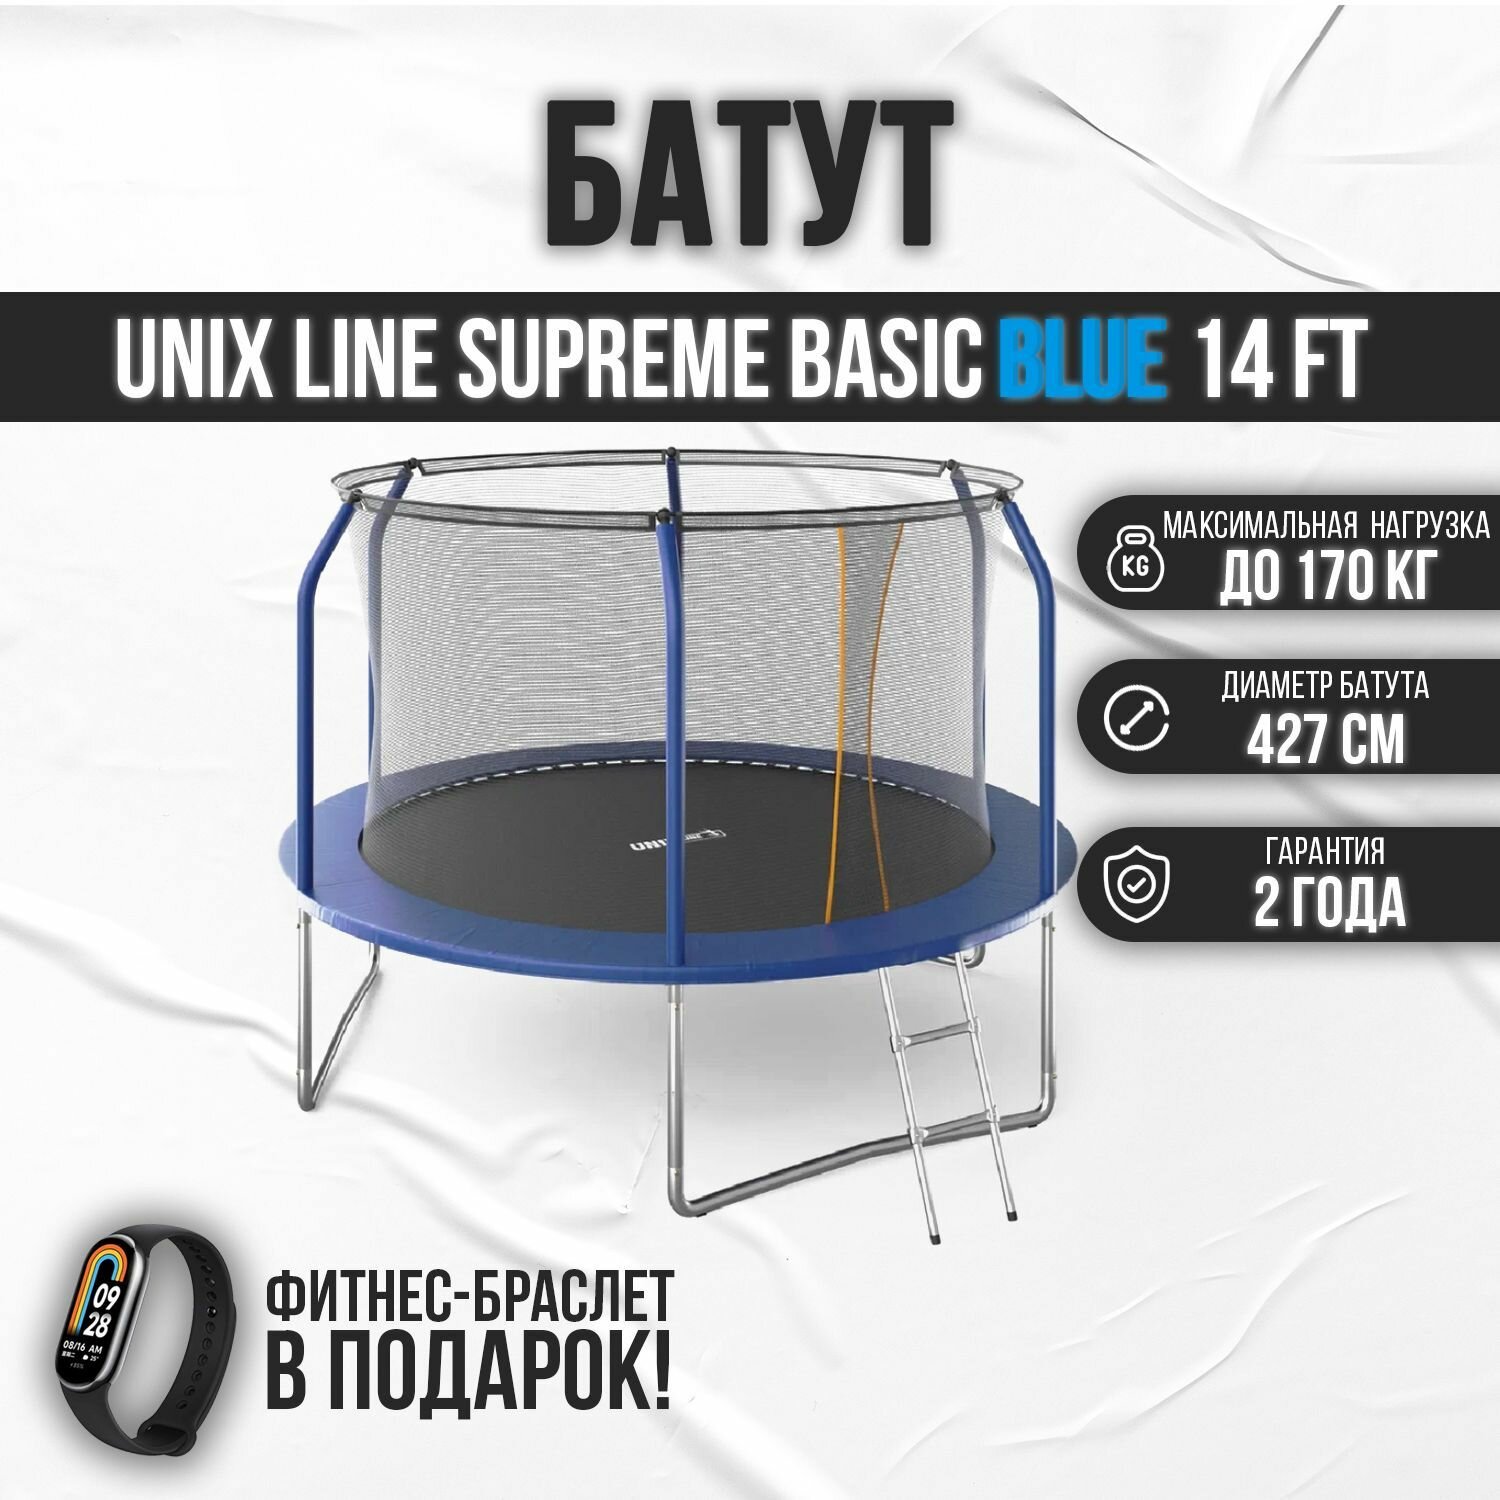 Батут UNIX Line SUPREME BASIC 14 ft blue, диаметр 427 см, до 160 кг, для дома и улицы, с внутренней защитной сетью, в комплекте лестница